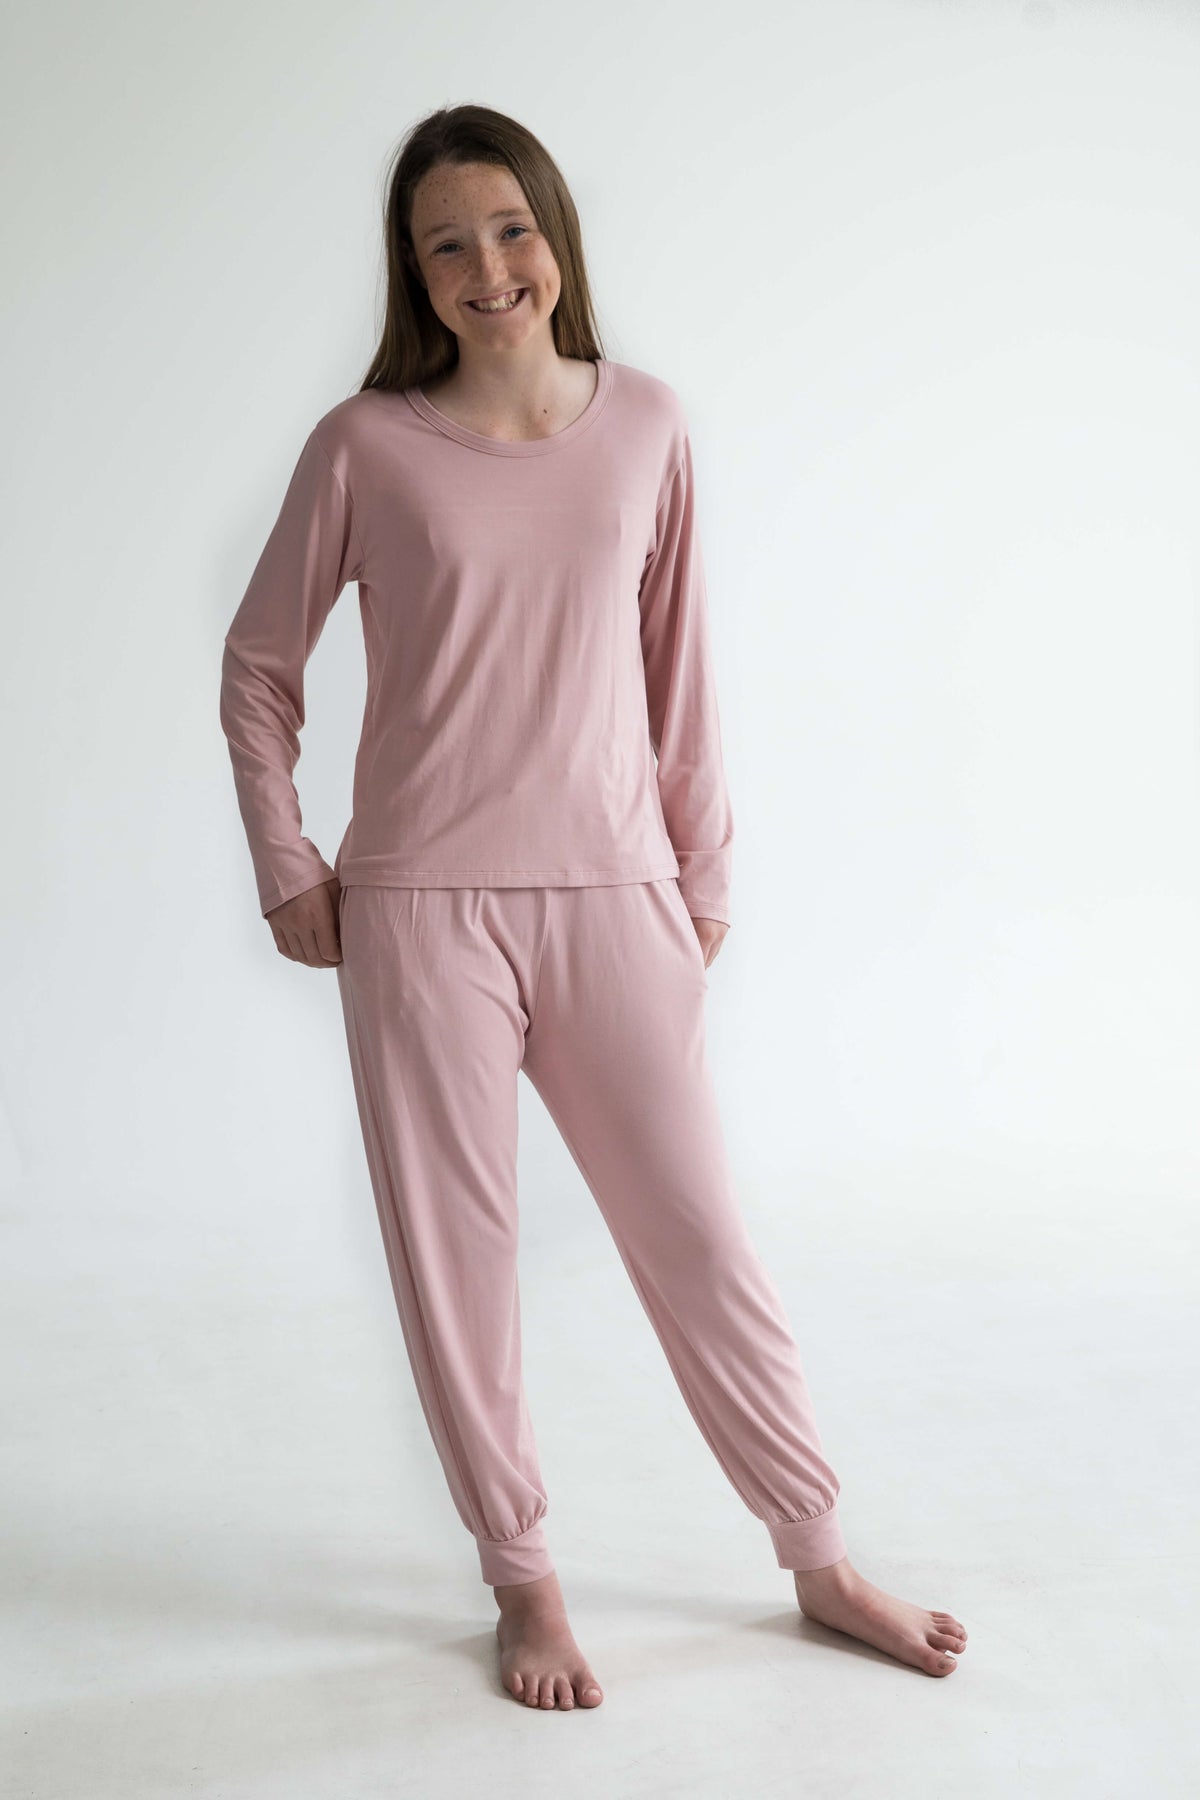 pink teen girls bamboo pyjamas long pants elastic waist, pockets and drawstring by Love Haidee Australia front view Ella